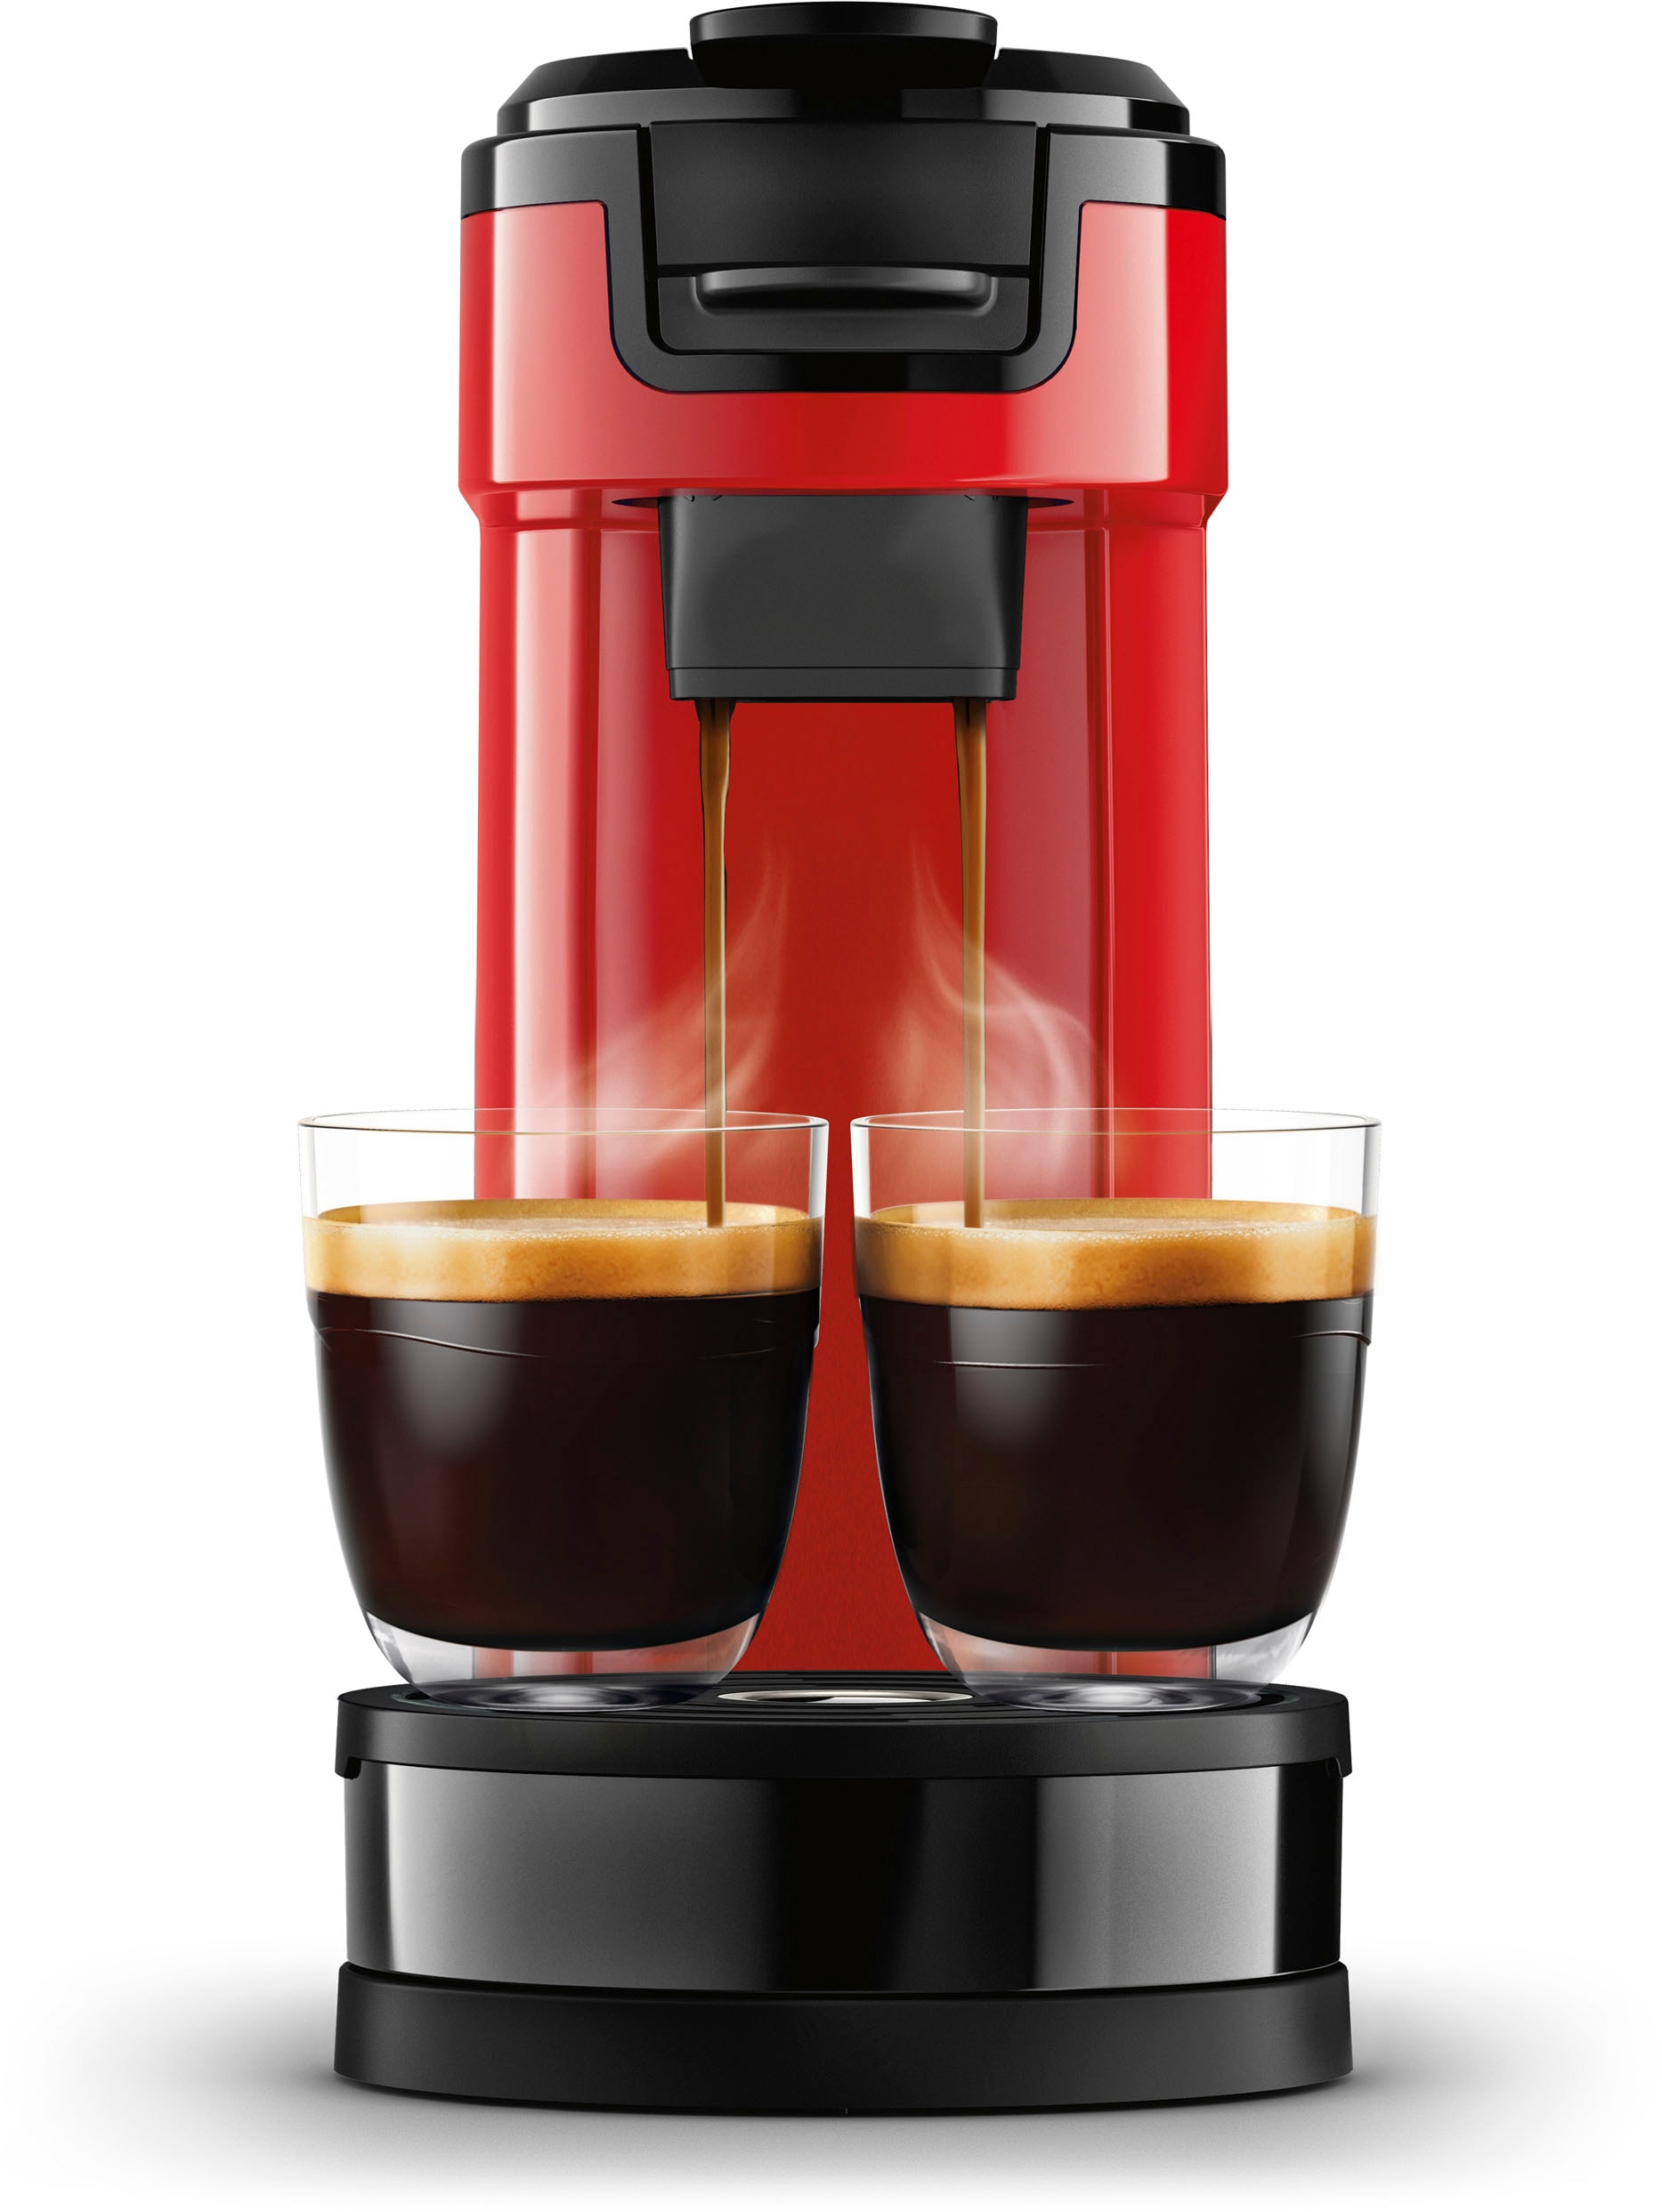 im »Switch UVP von Kaffeepadmaschine bei inkl. Senseo € Kaffeekanne, Kaffeepaddose l HD6592/84«, online 9,90 Wert 1 Philips